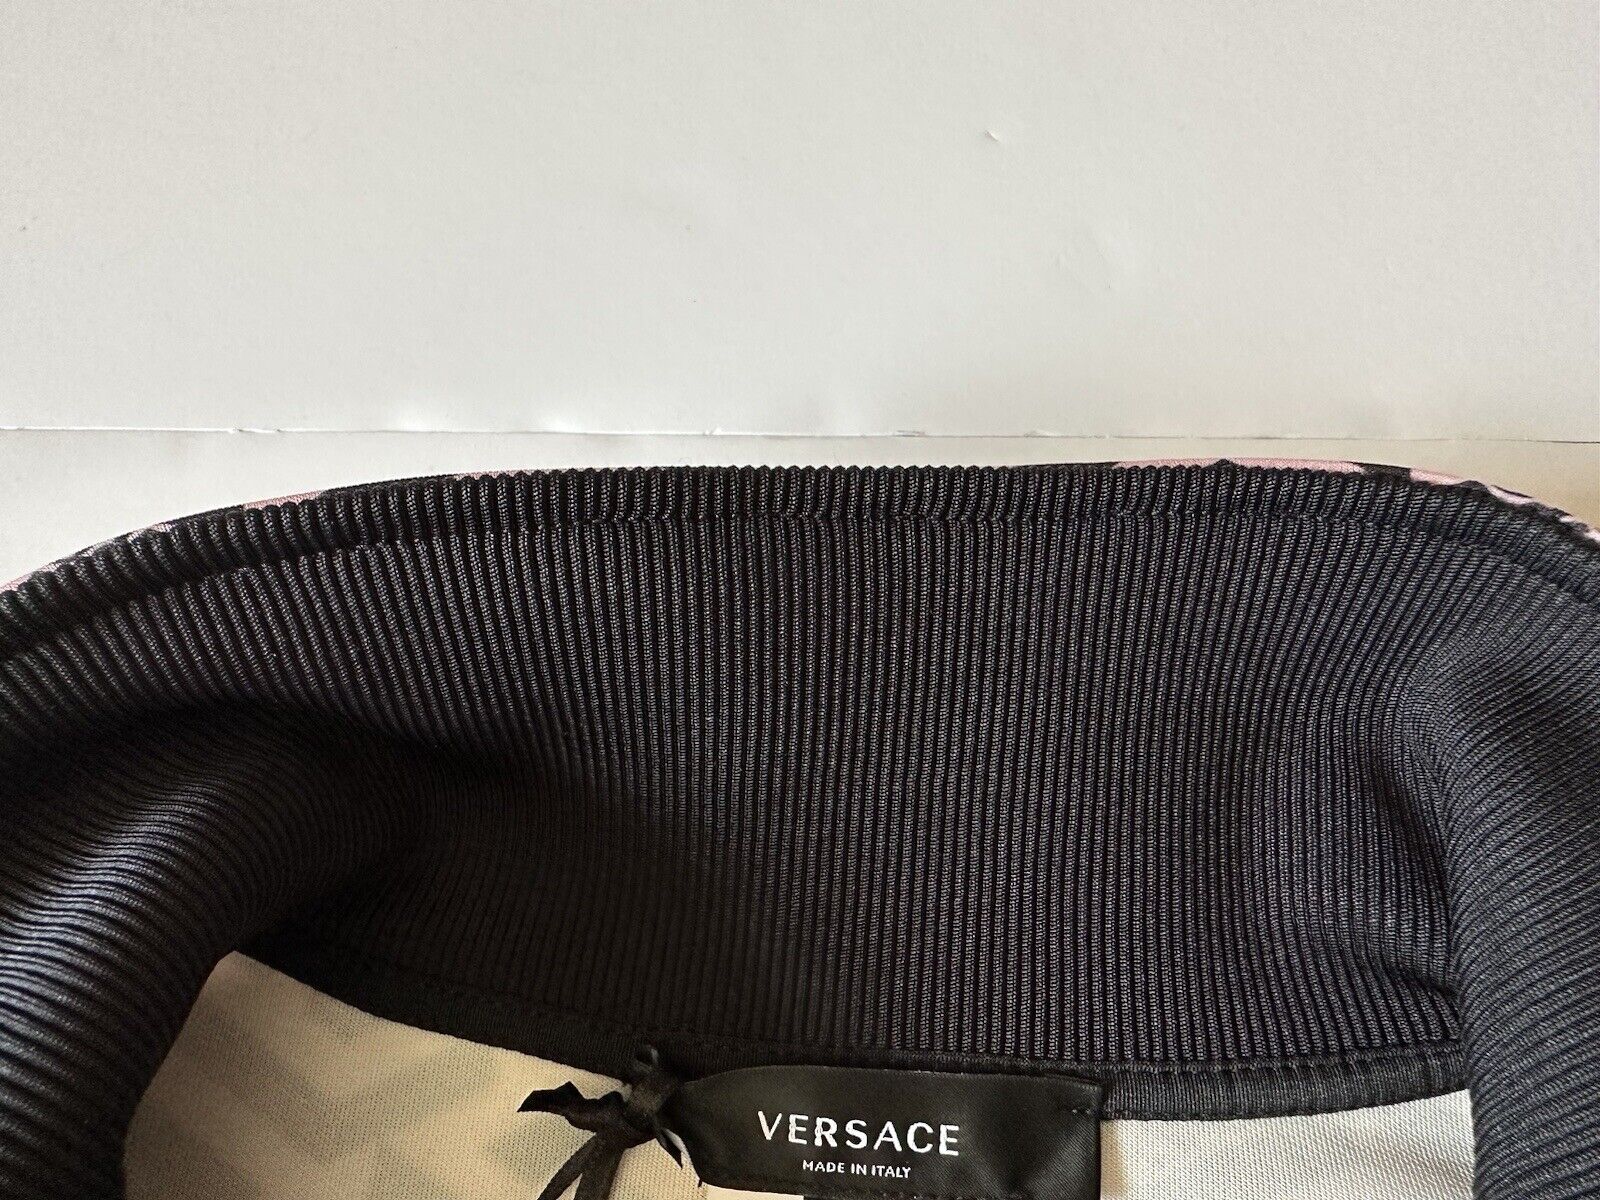 NWT $925 Женская куртка-джоггер с принтом Versace Greca, черная, размер 5 1002080 Италия 